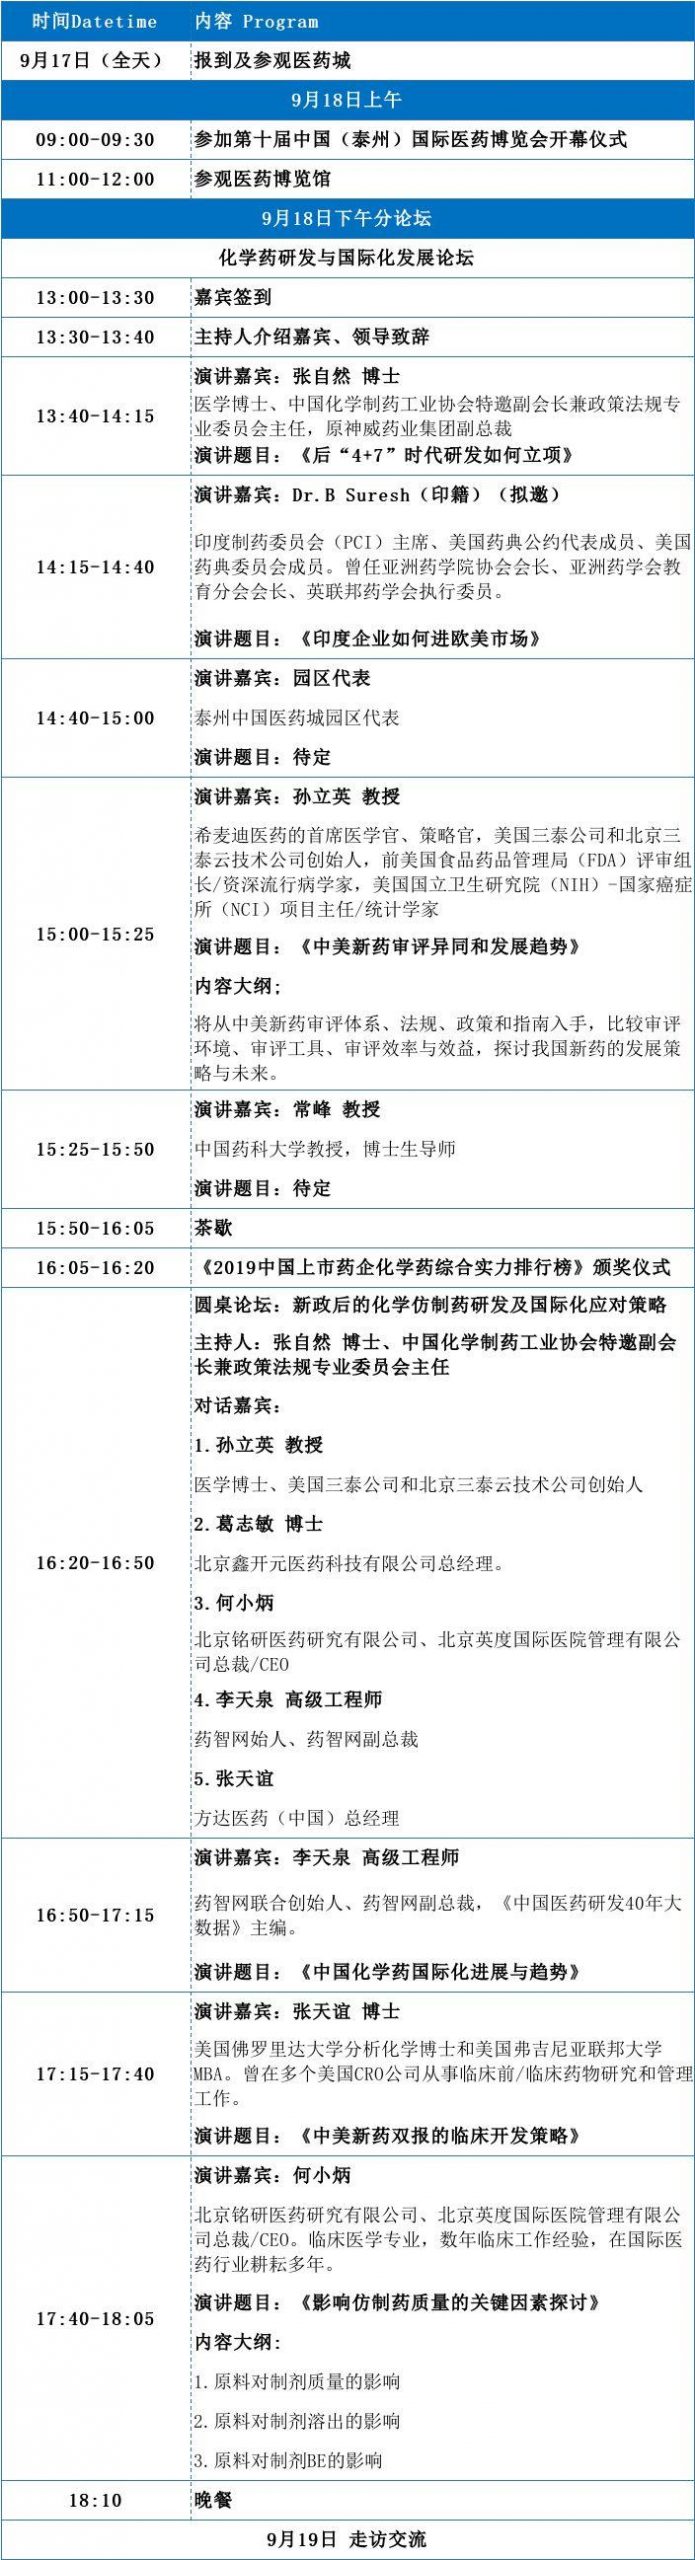 【邀请函】第十届中国（泰州）国际医药博览会 化学药研发与国际化发展论坛